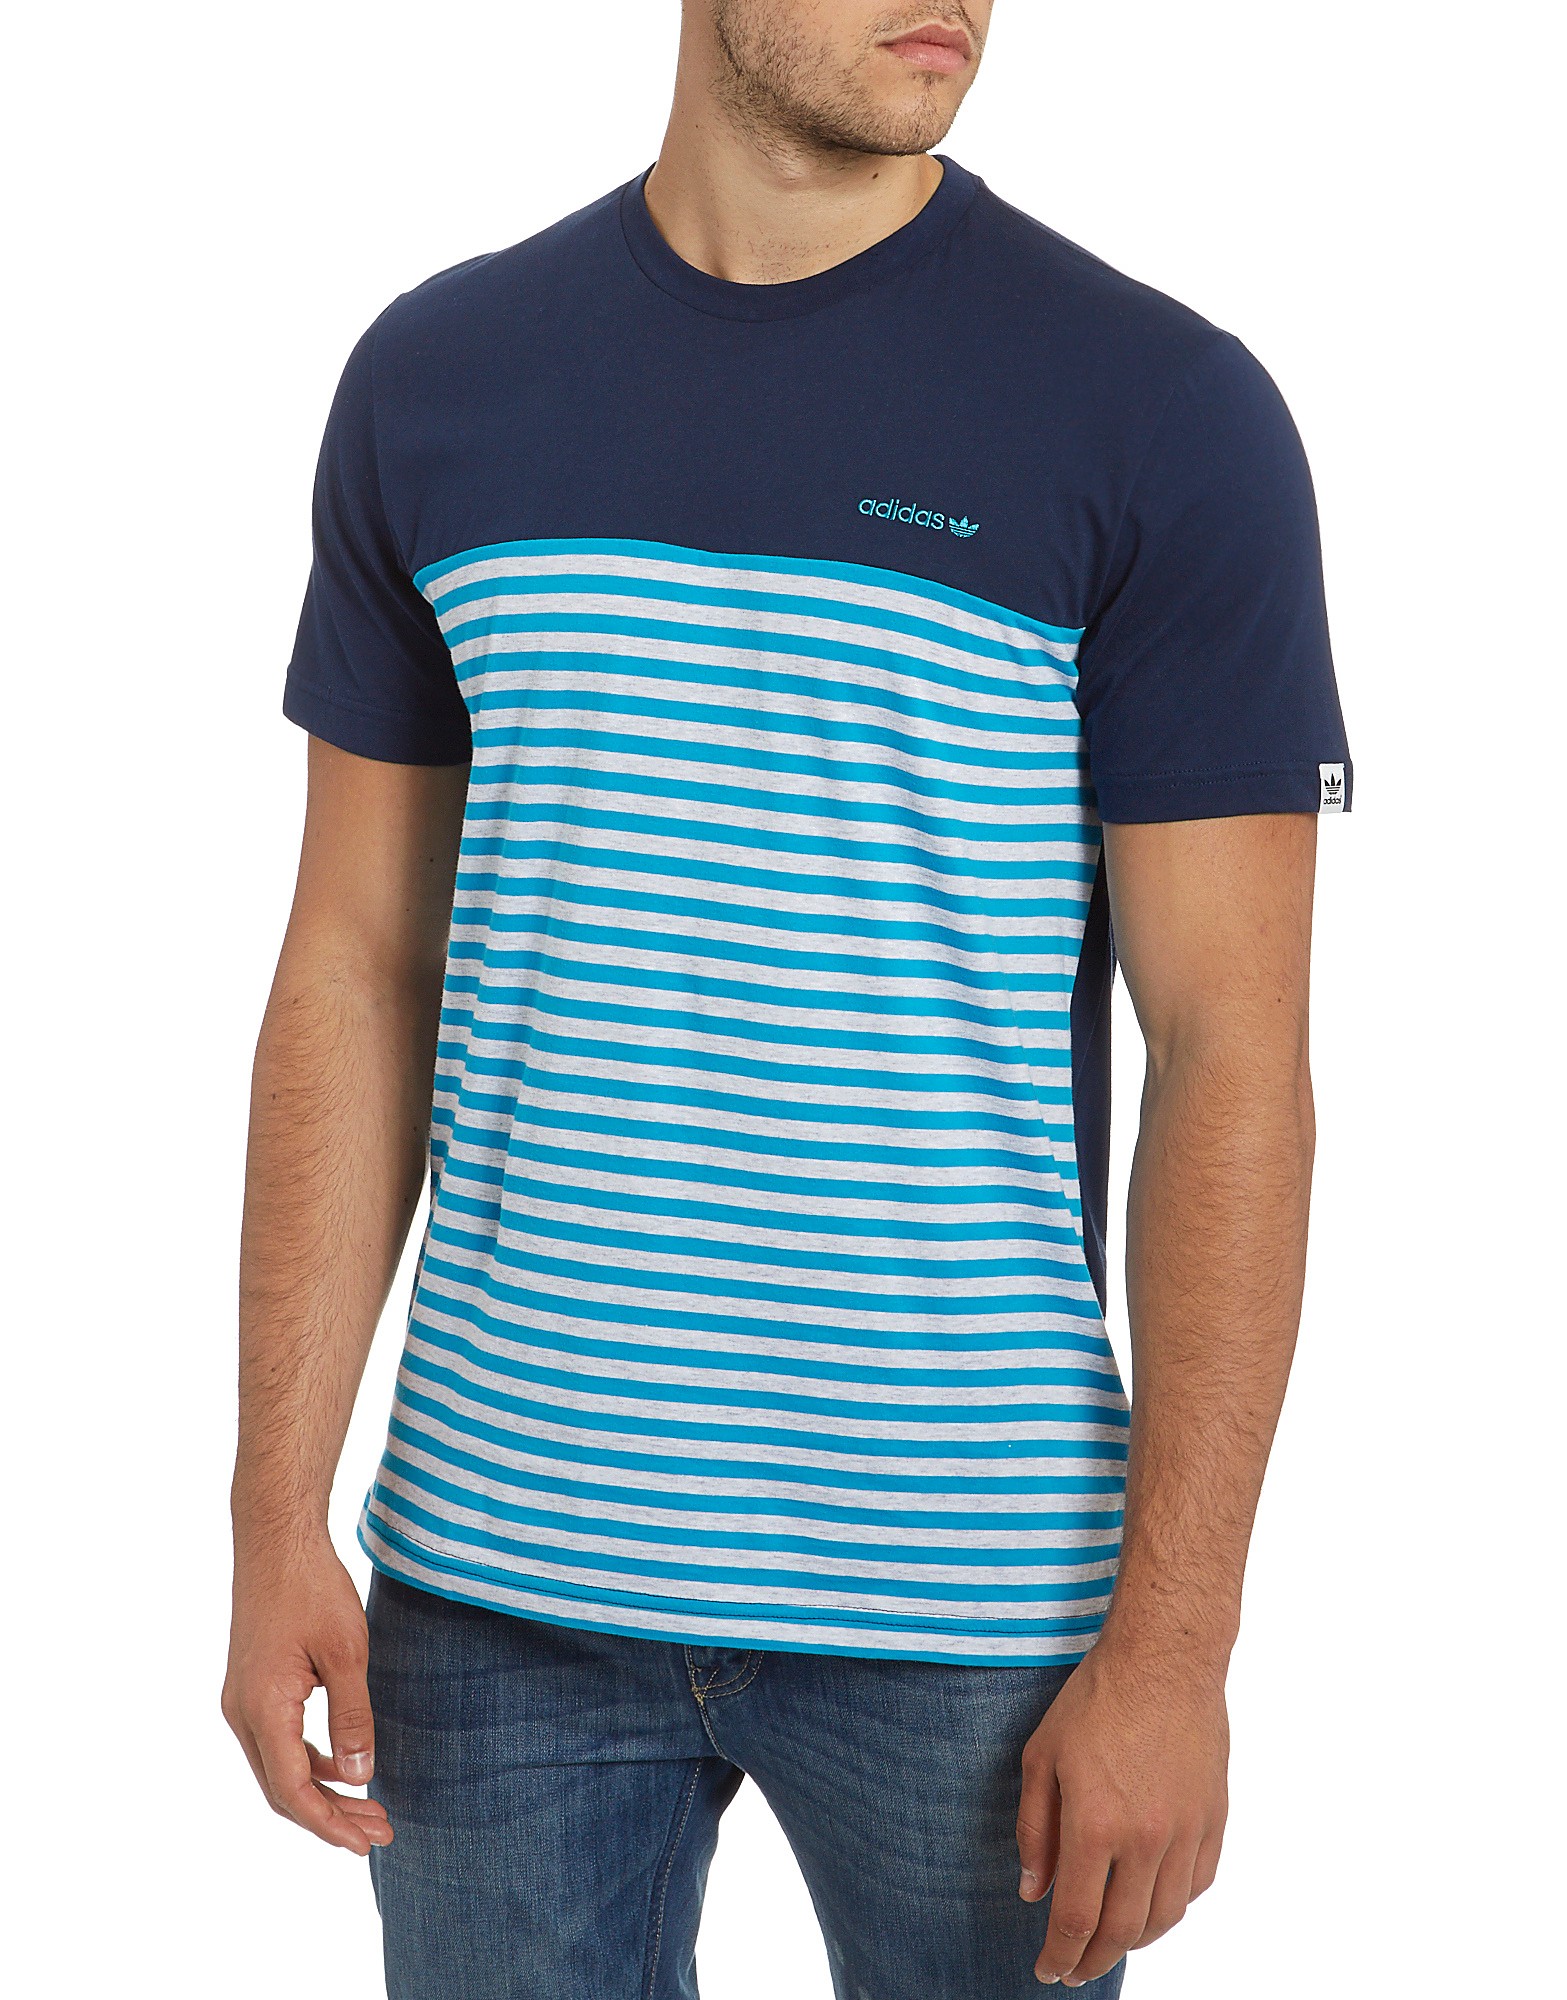 Trefoil Stripe T-shirt